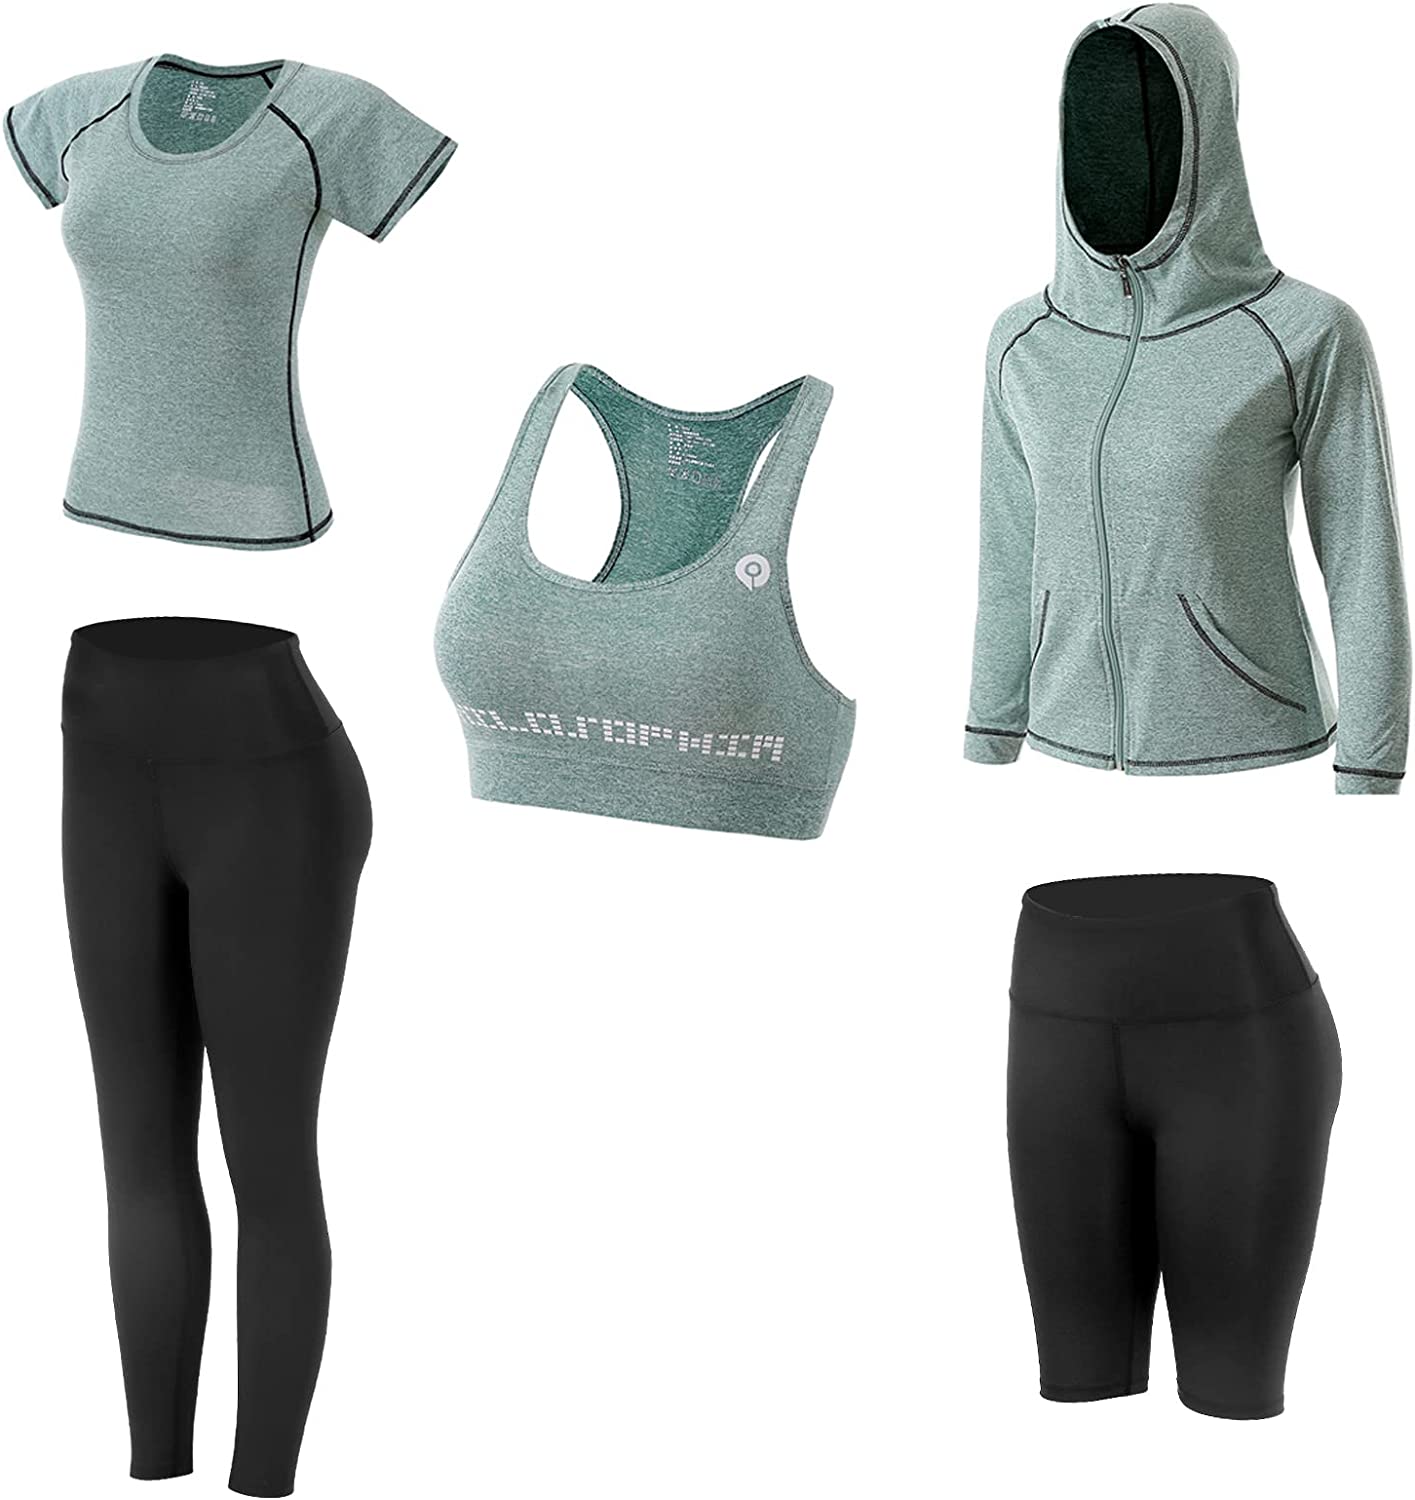 Women Workout Clothes Set 5 PCS Exercise Athletic Outfits Set